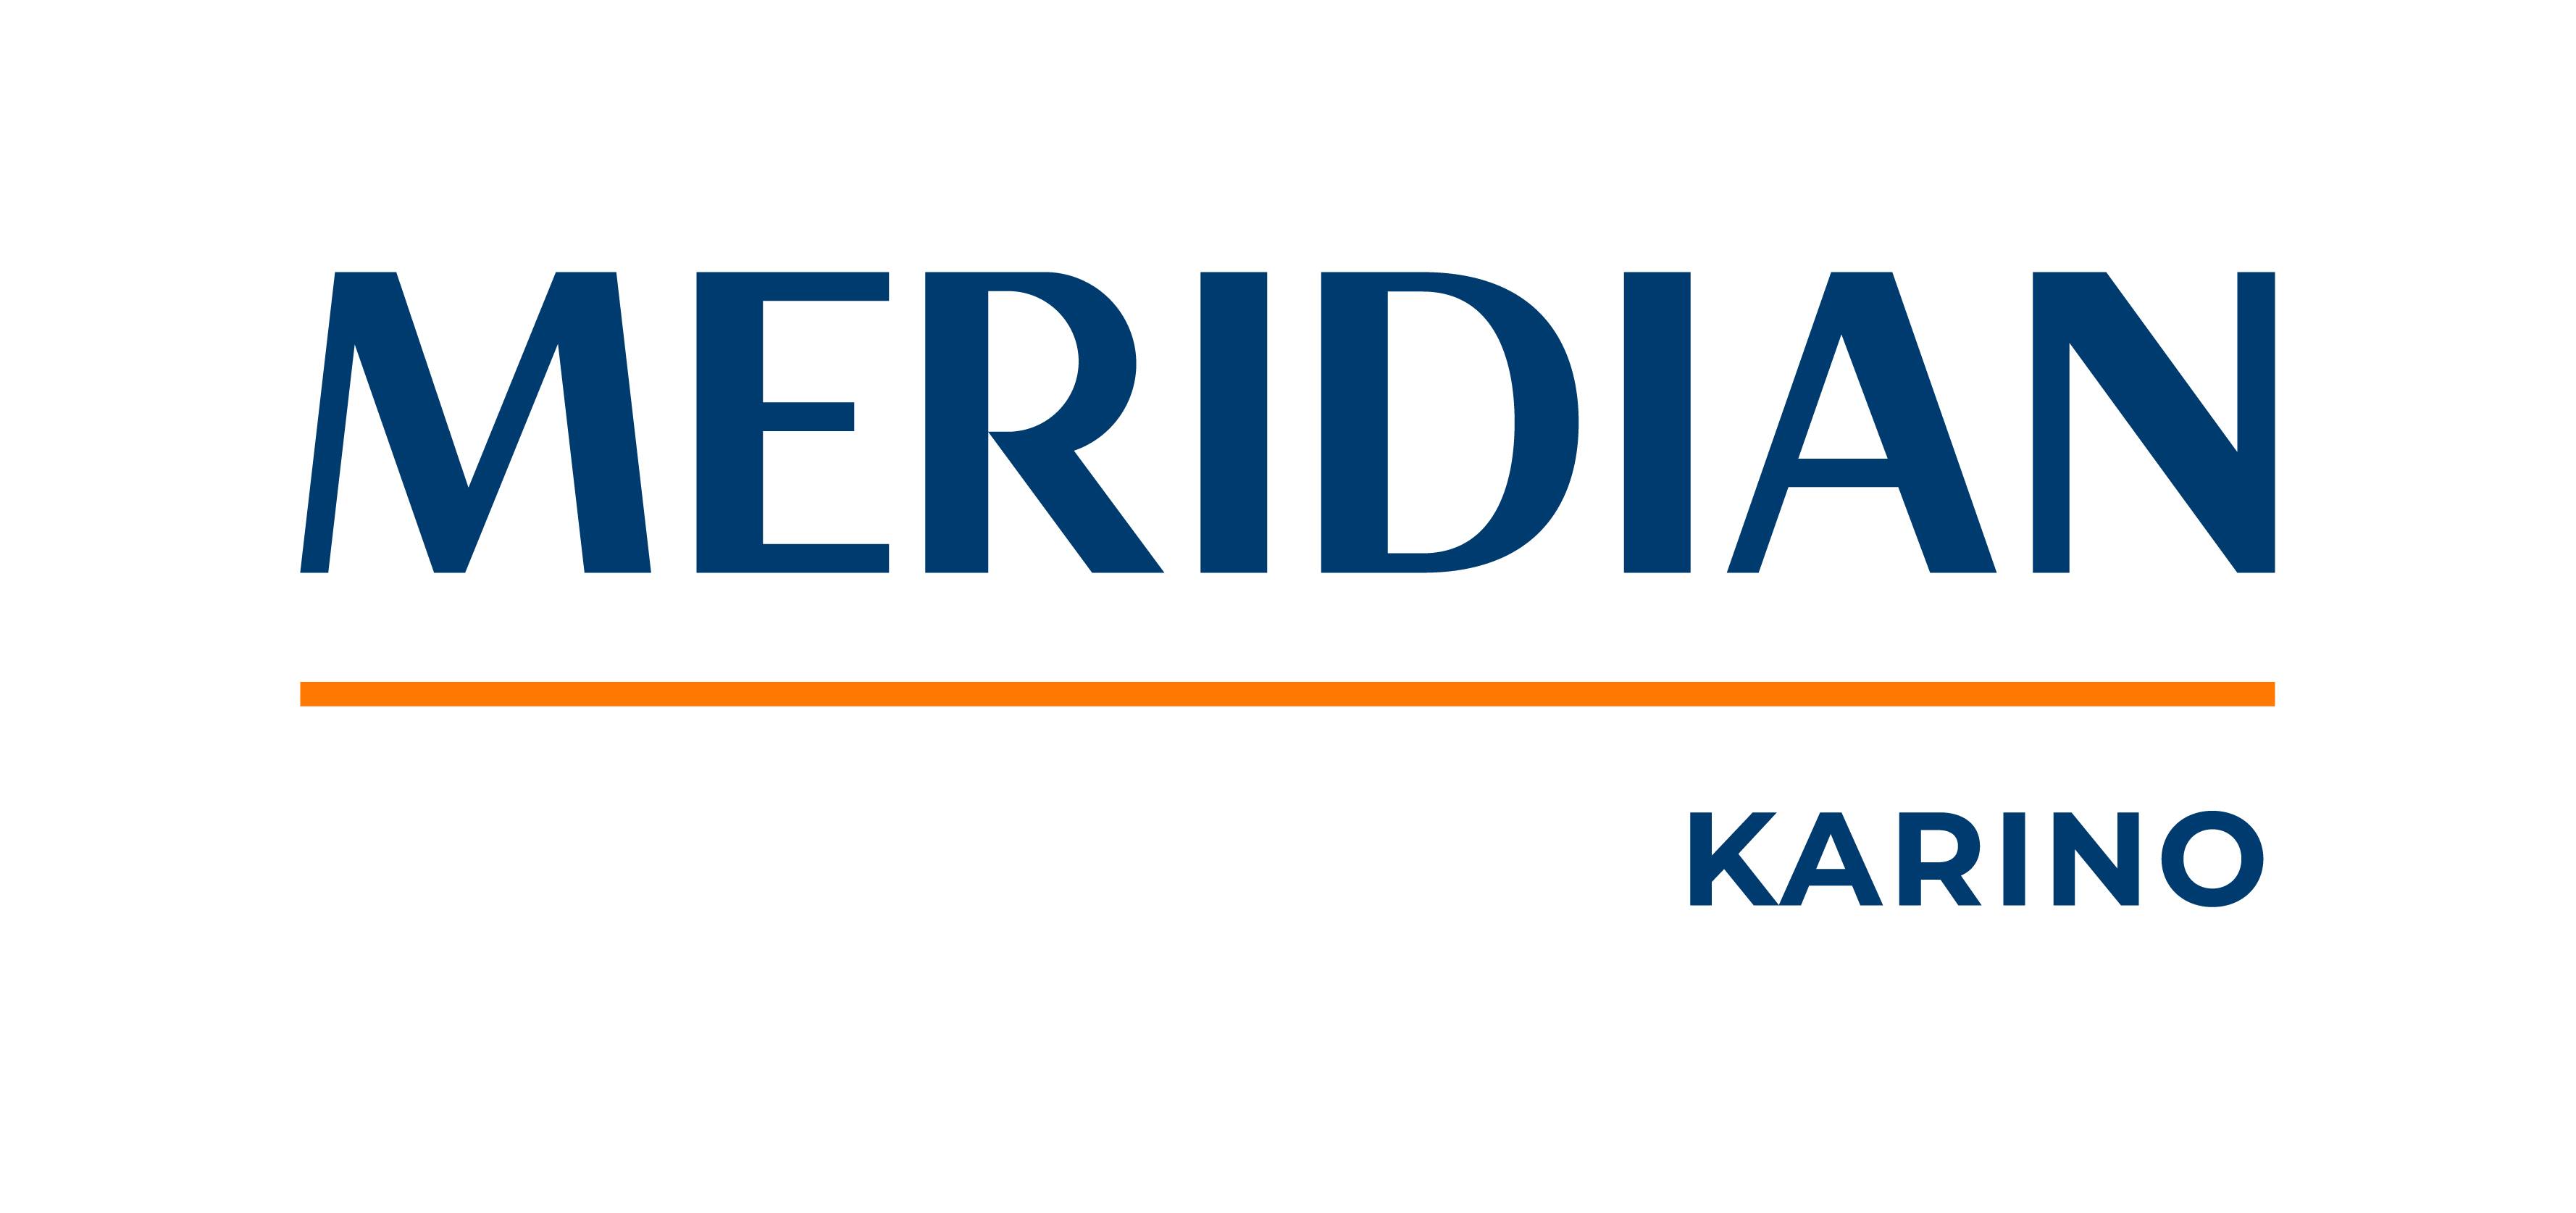 Meridian-Karino-logo-colour.jpg